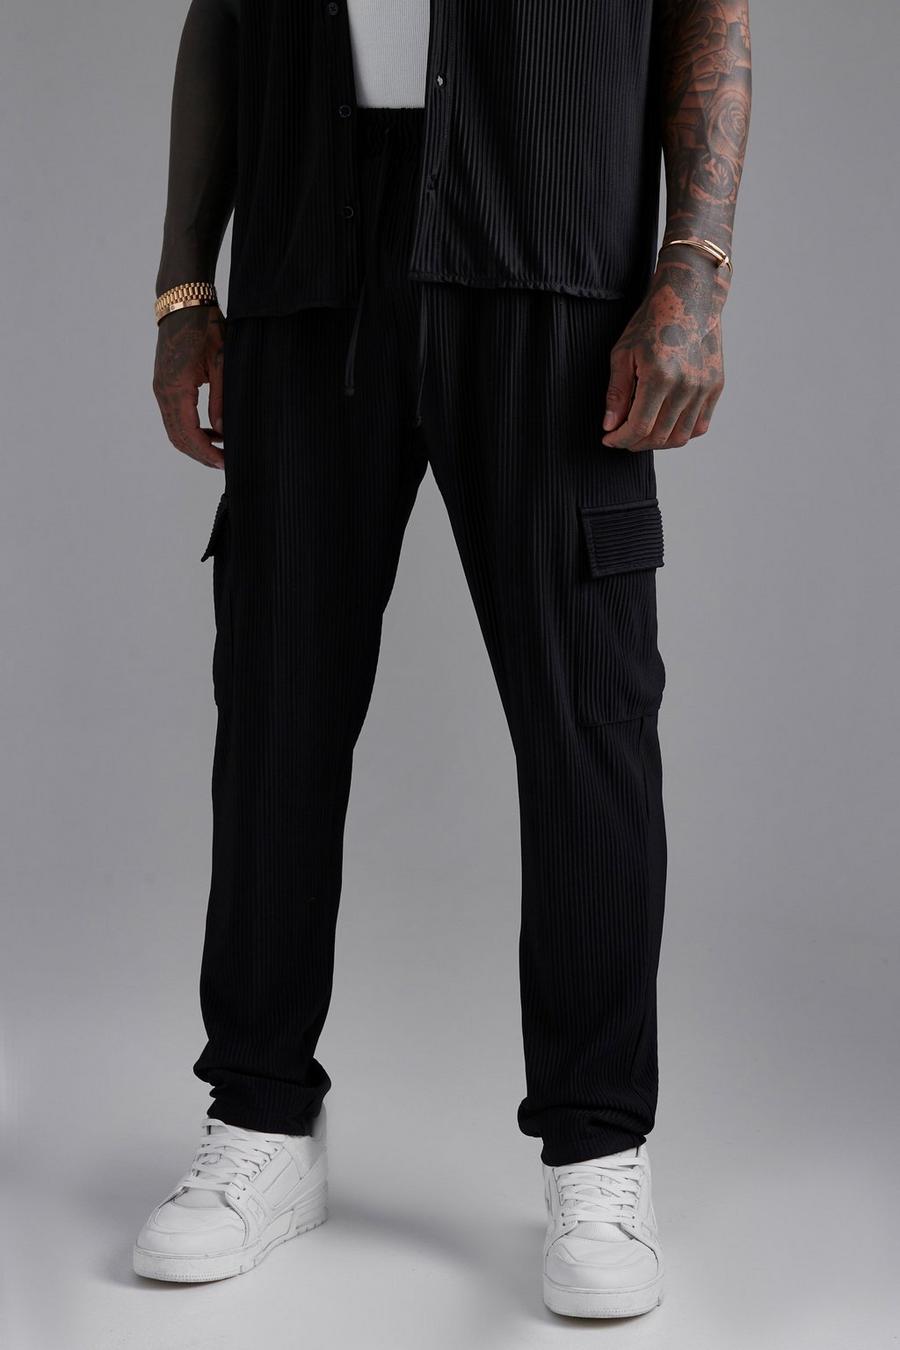 Pantalón cargo plisado ajustado, Black negro